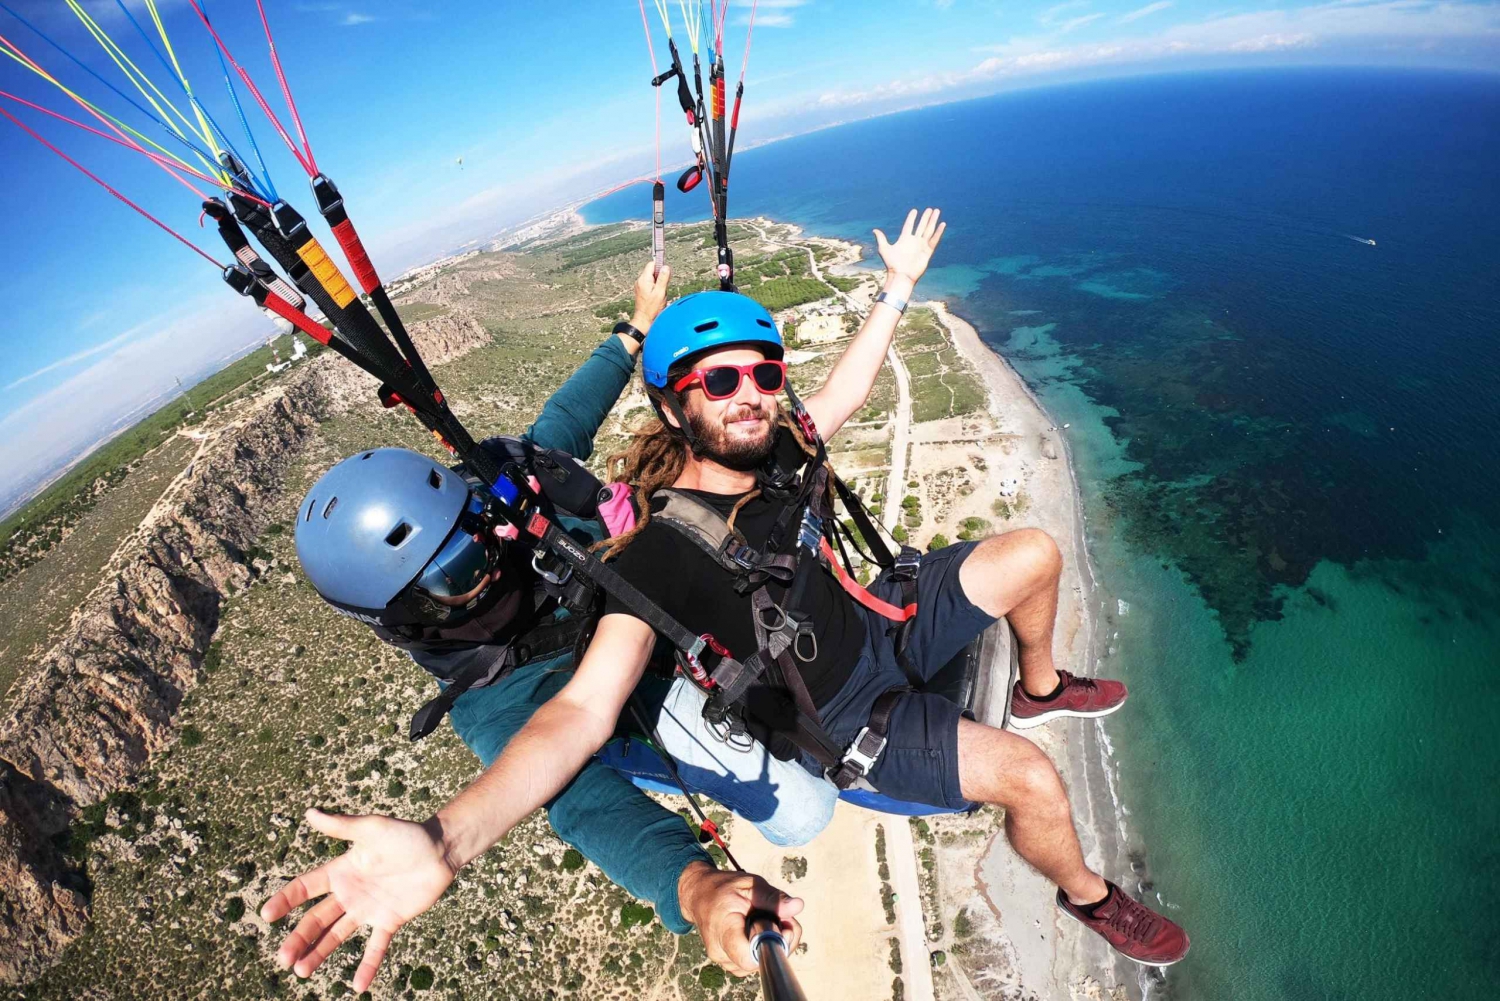 Alicante: Tandem Paraglide Flight